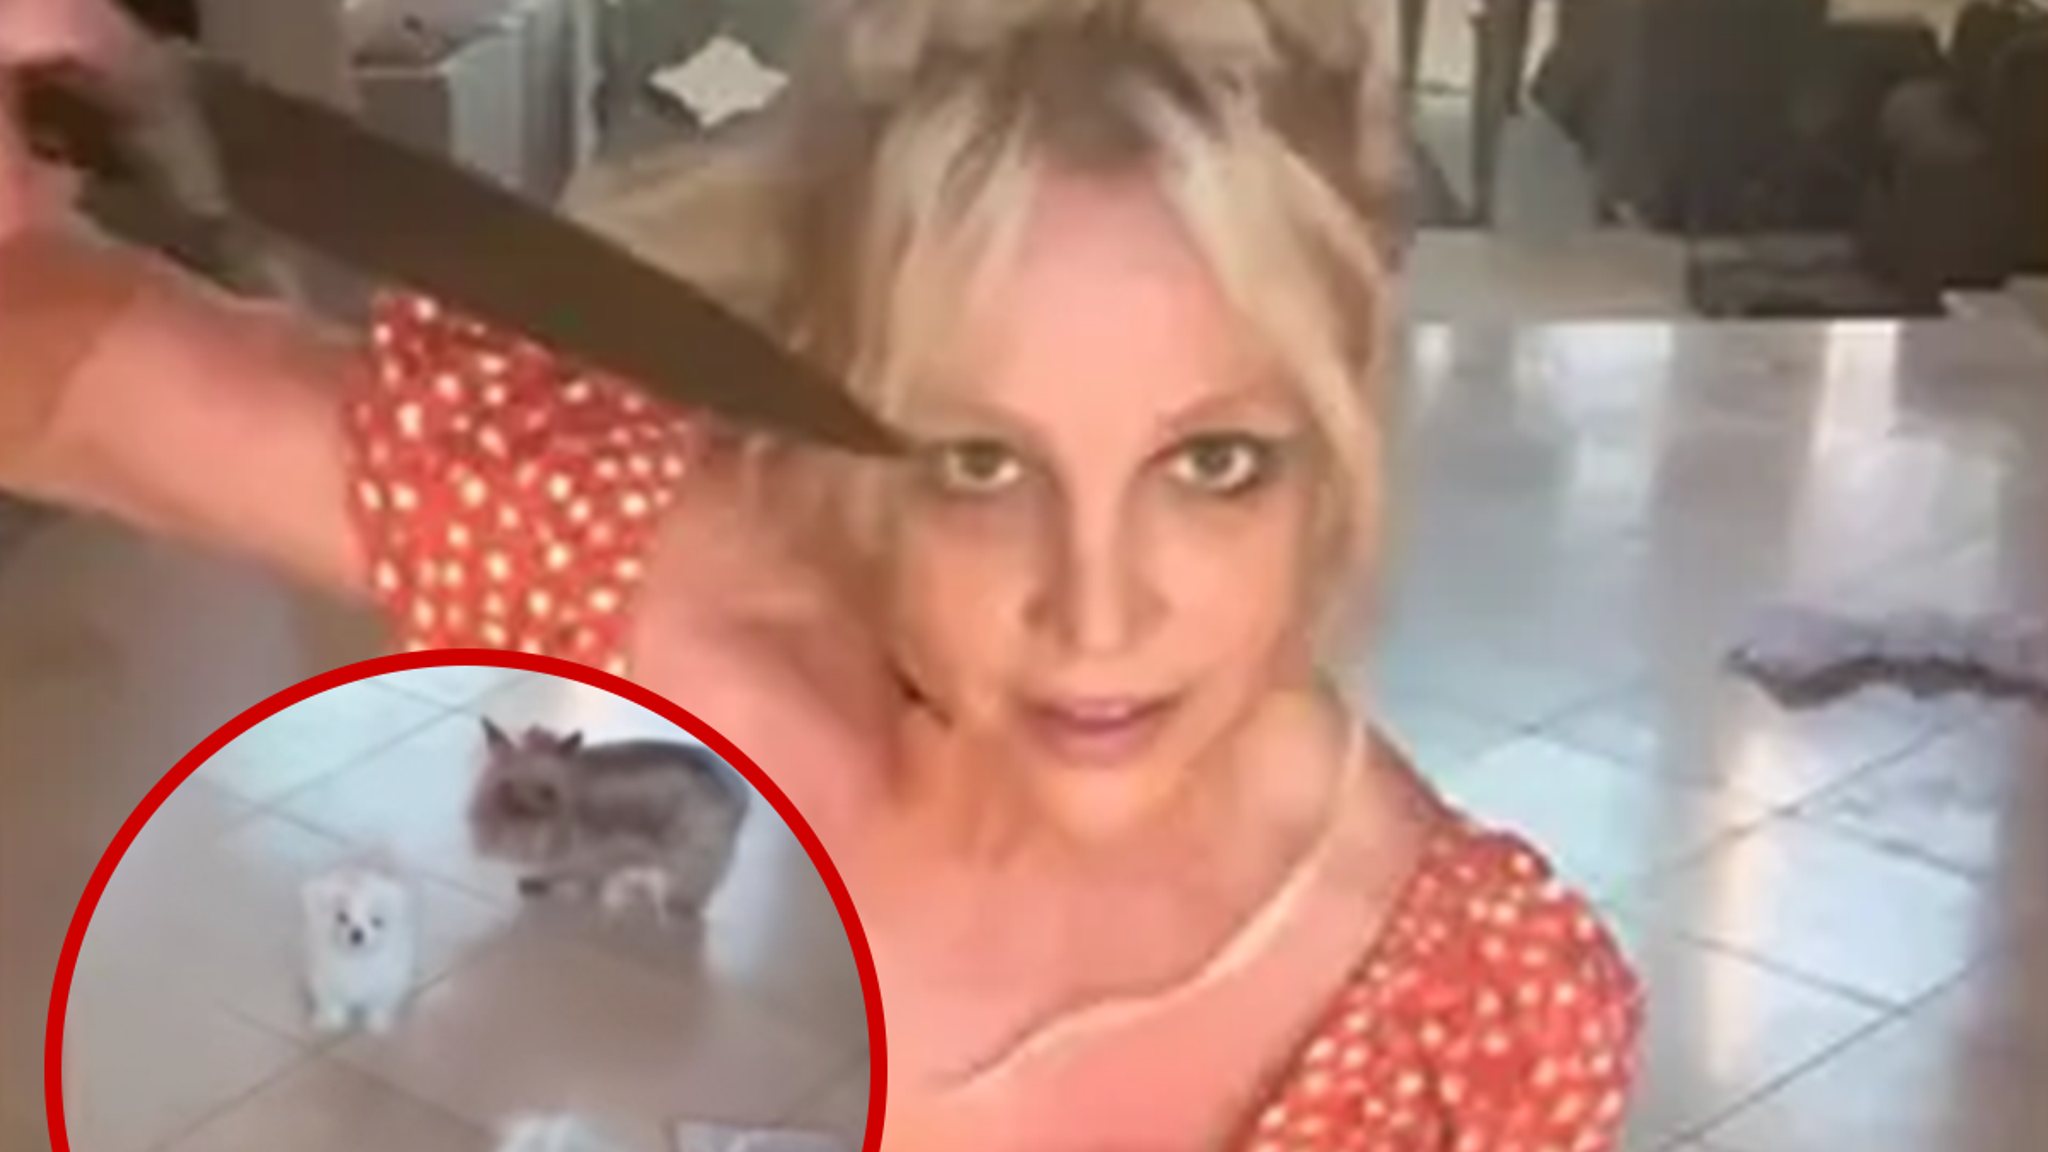 Britney Spears’ Fans Want Dogs Taken Away After Dangerous Knife Video